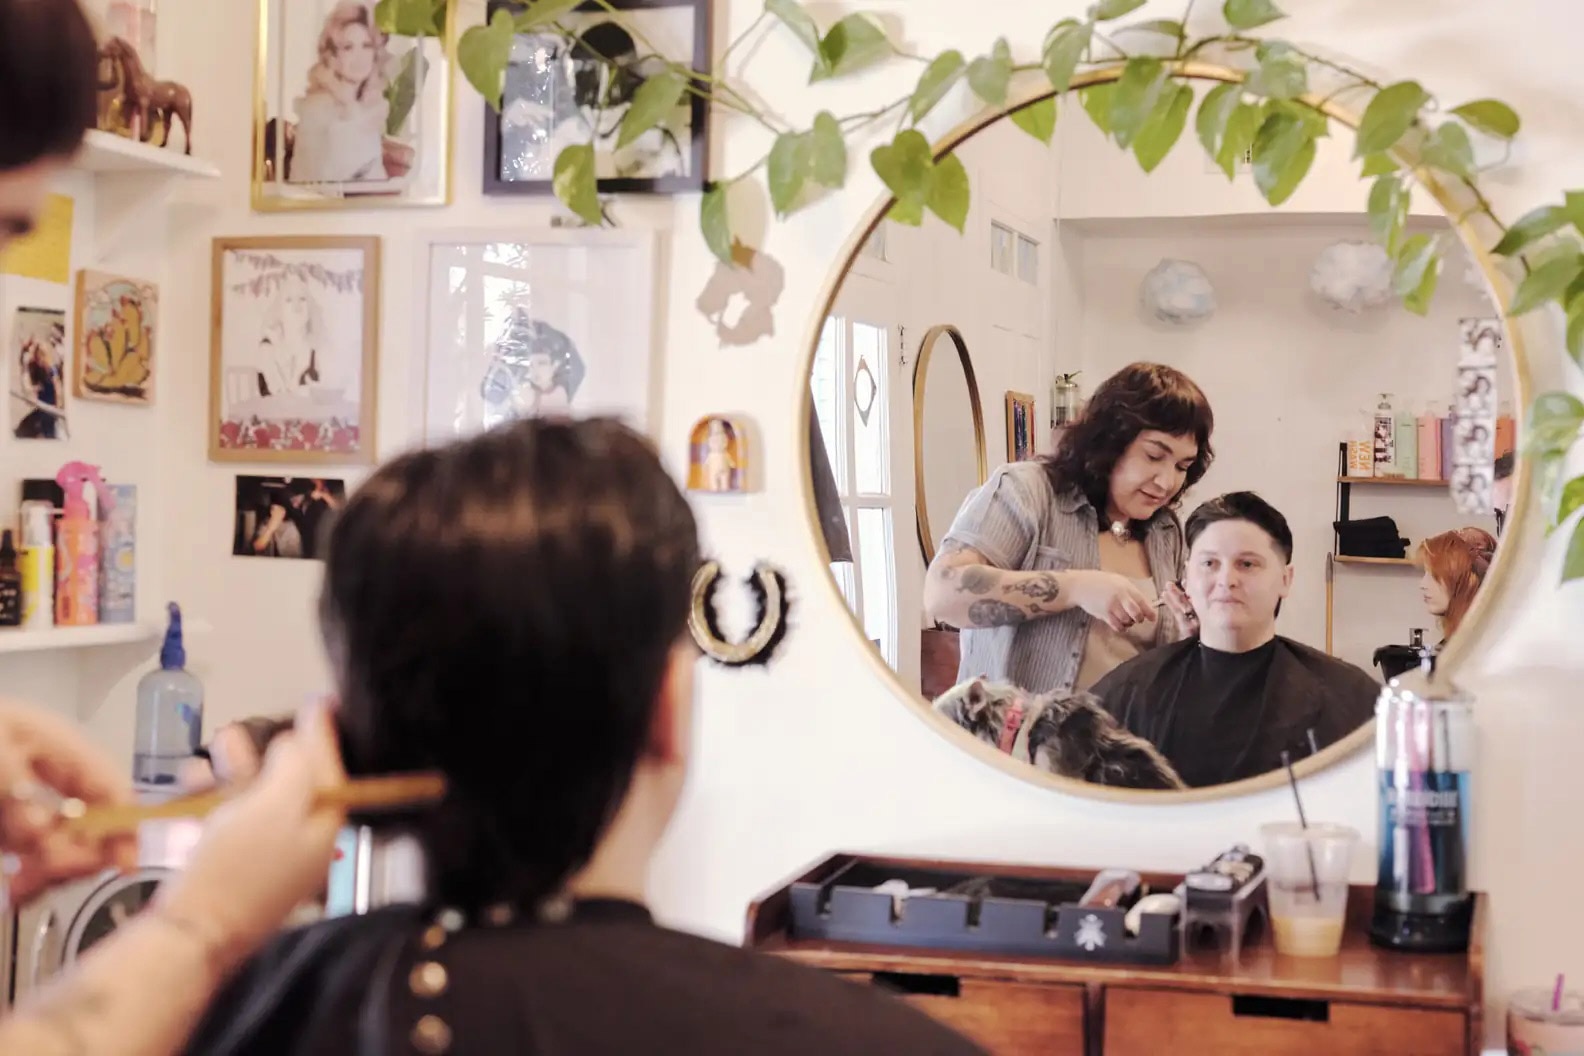 A person is getting a hair cut at a salon.